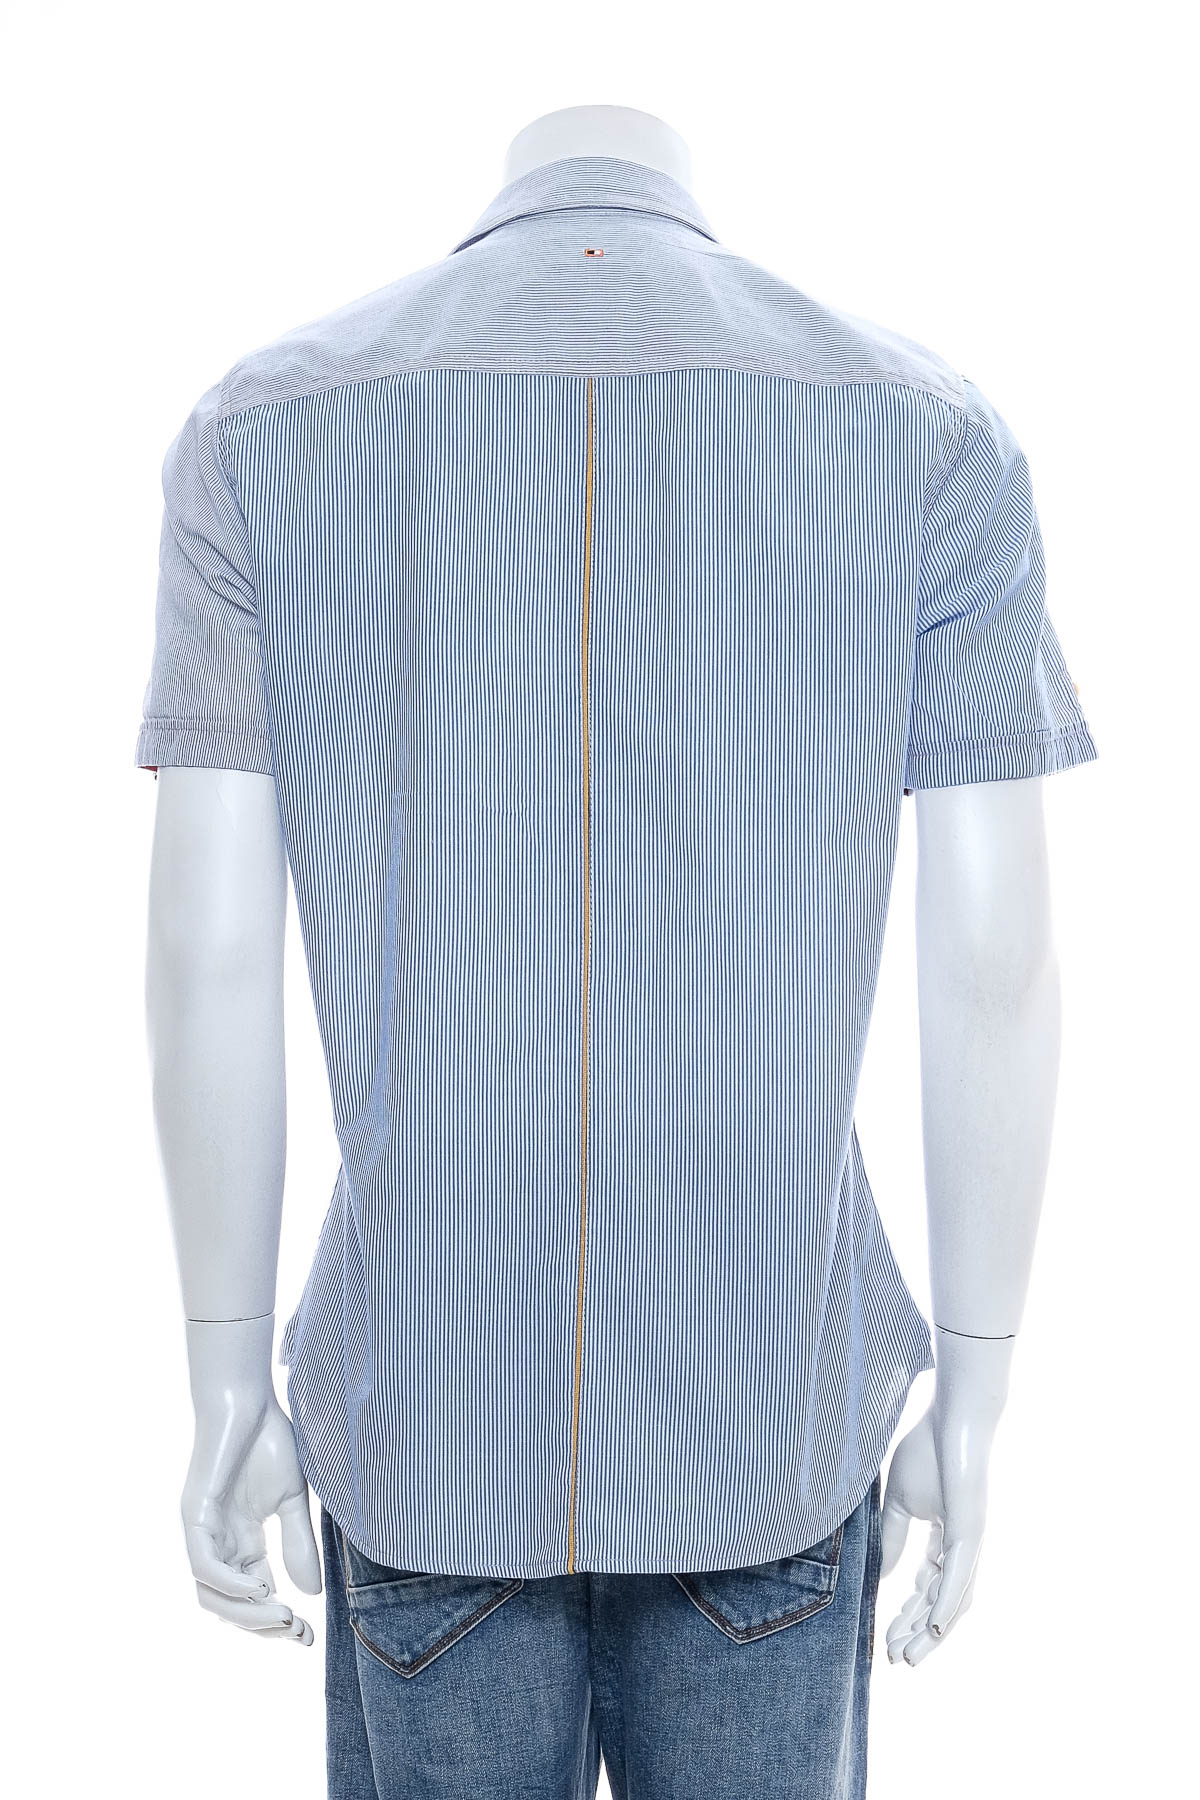 Ανδρικό πουκάμισο - Emilio Adani - 1